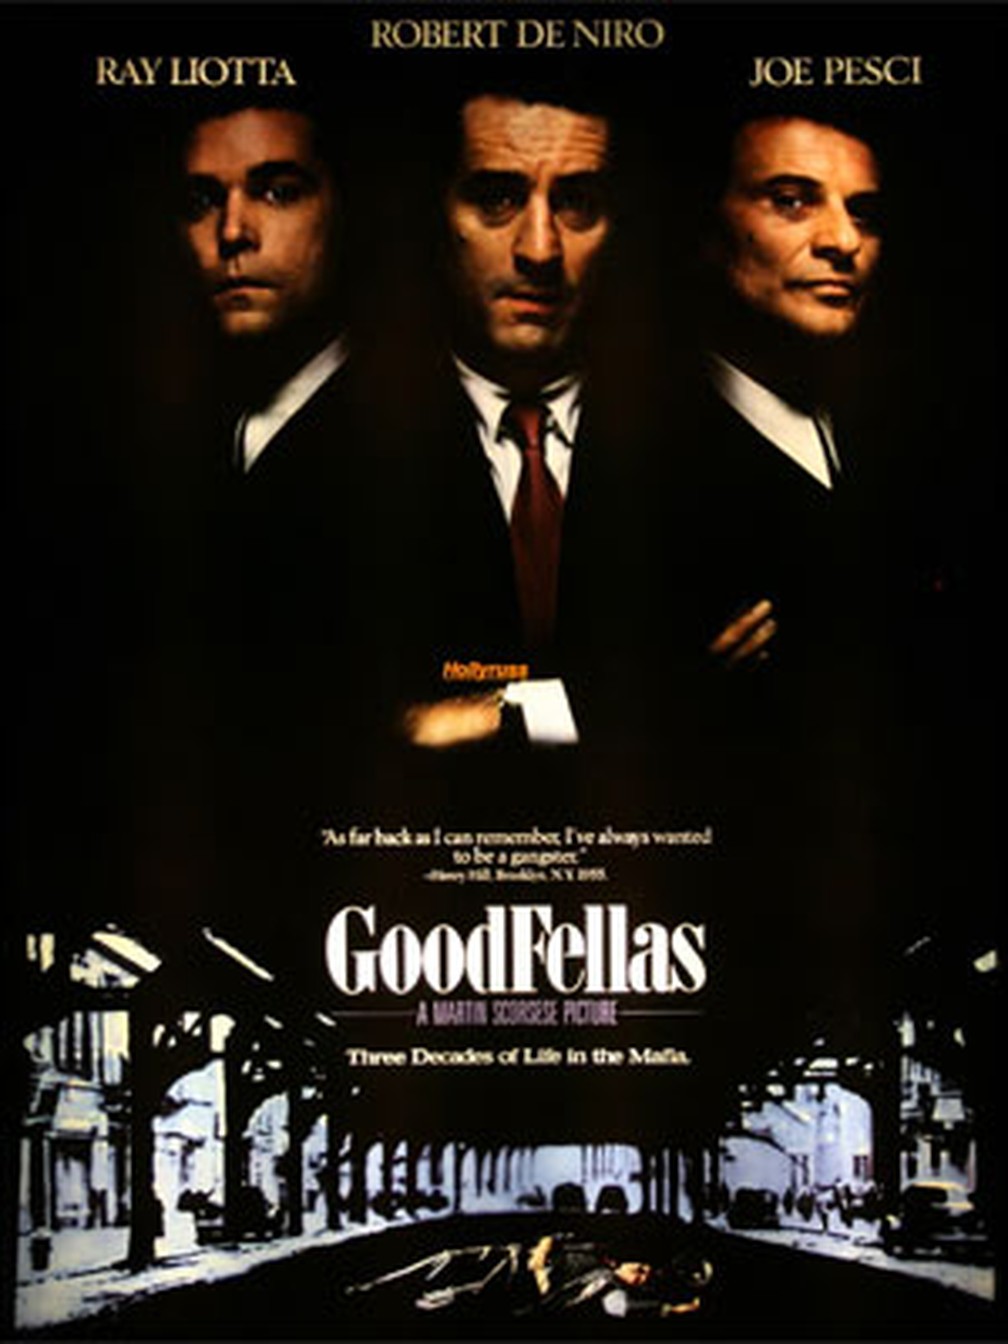 Pôster do filme 'Os bons companheiros', com Liotta, DeNiro e Pesci — Foto: Reprodução